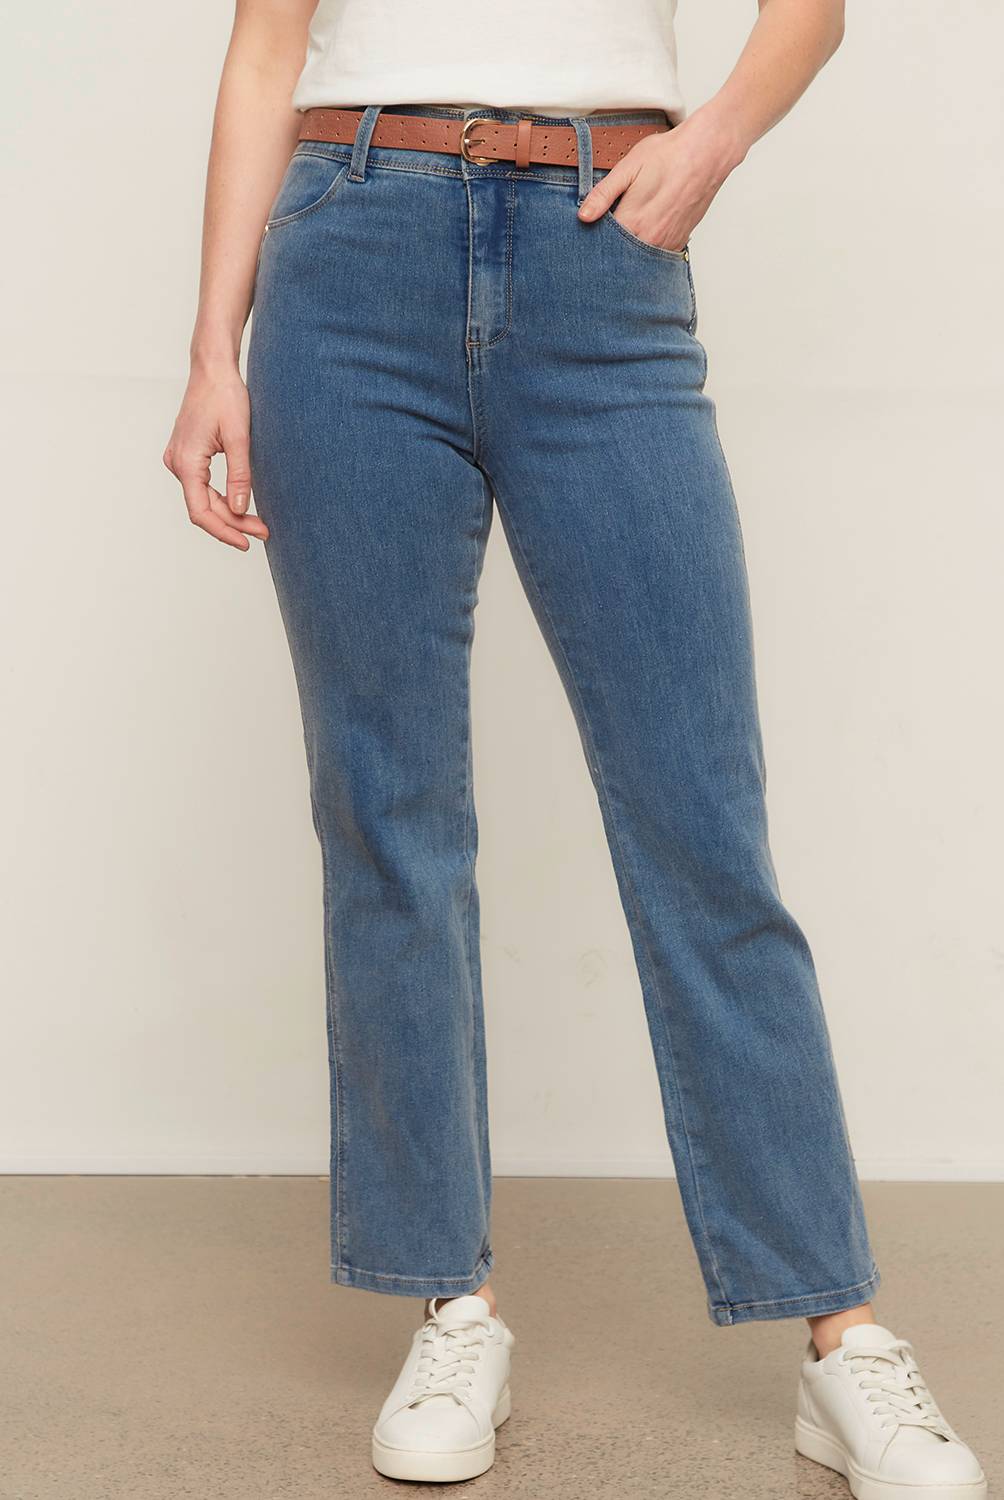 NEWPORT - Jeans Recto Tiro Alto Mujer Newport